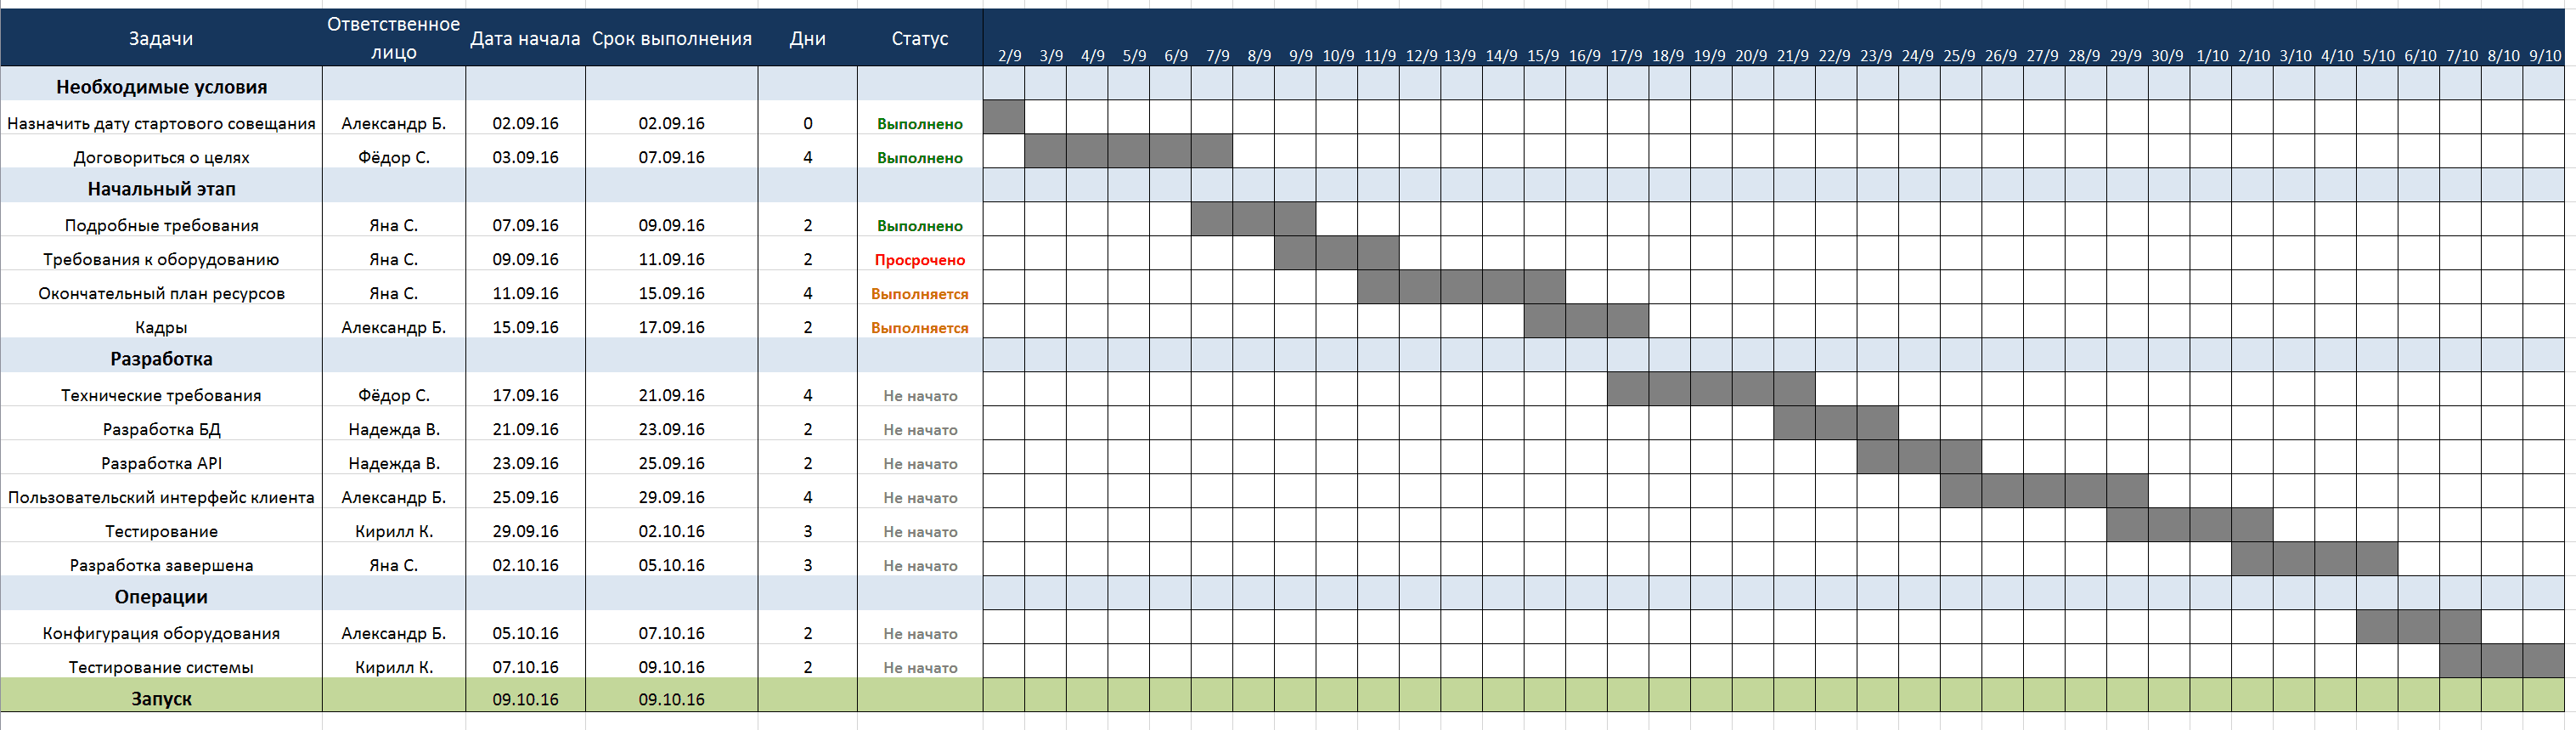 Таблица за изпълнение на задачи в стил ATC